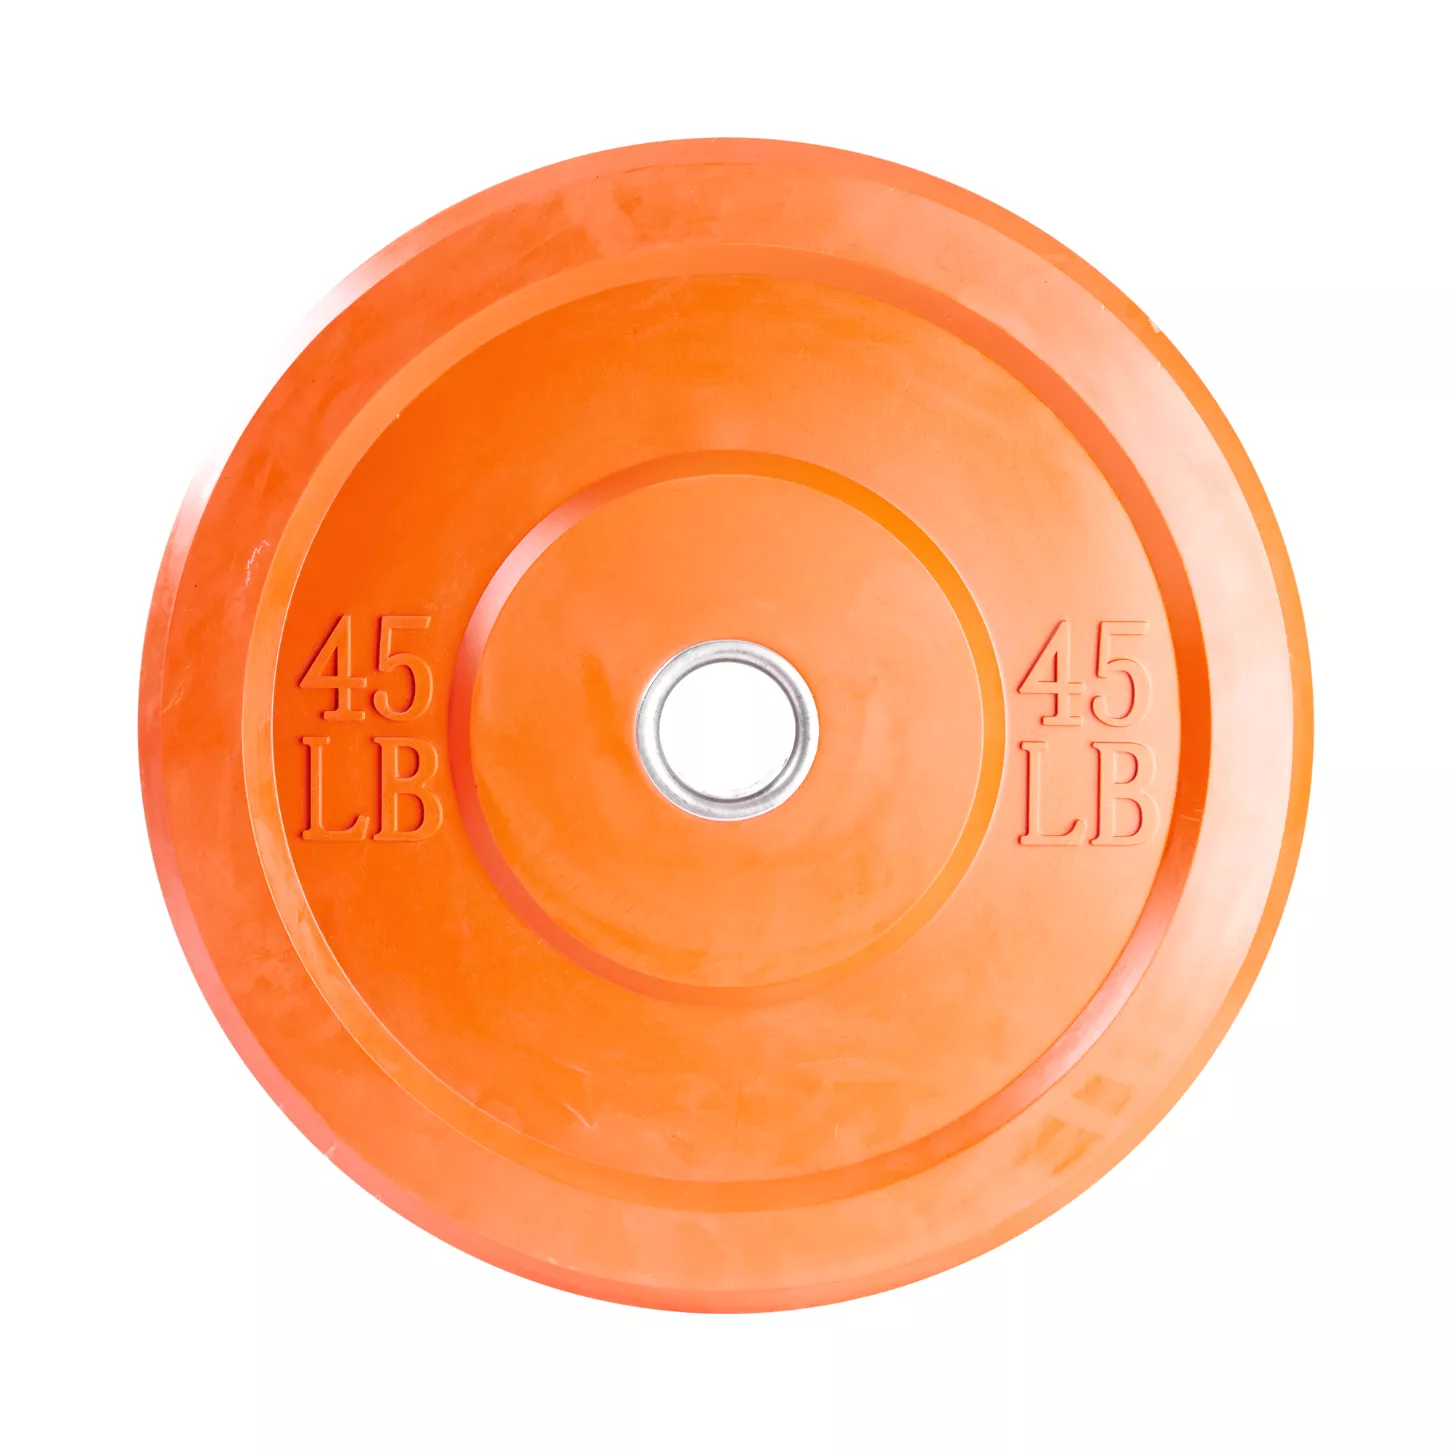 Disco de peso naranja para barra 45lbs - GYM GET IN SHAPE